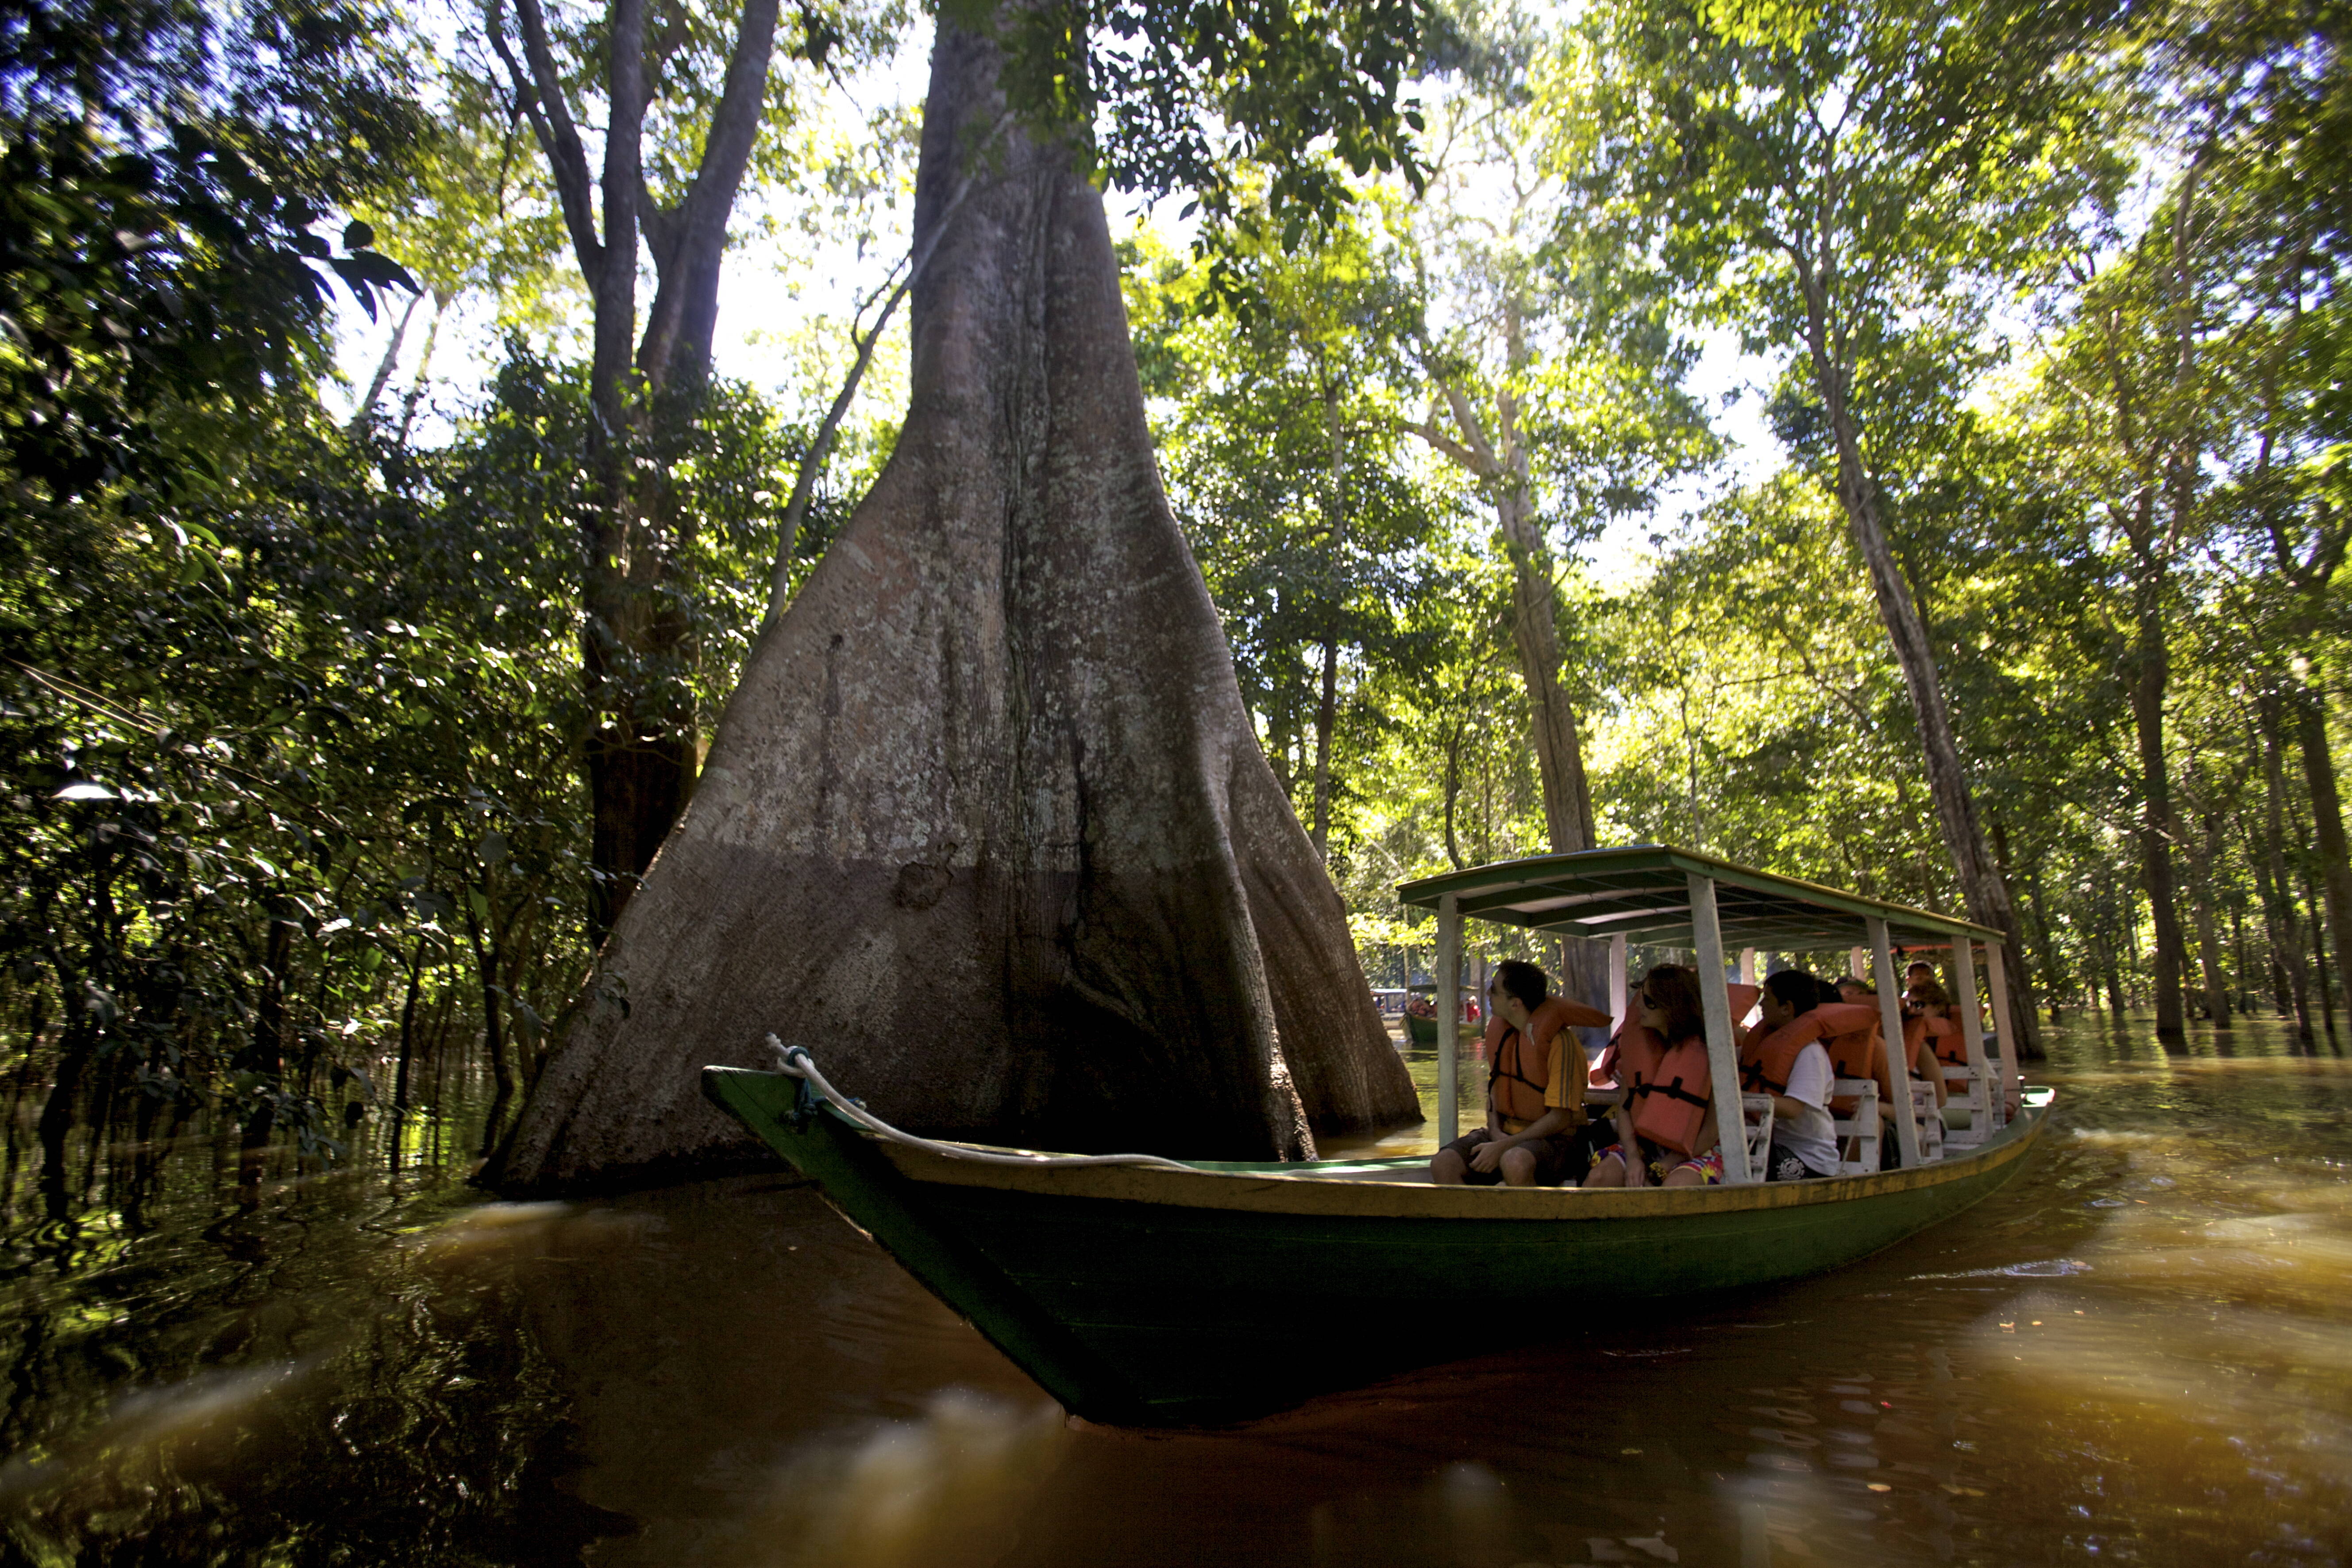 Passeio pelo rio Amazonas é uma das principais atrações em Manaus Getty Images